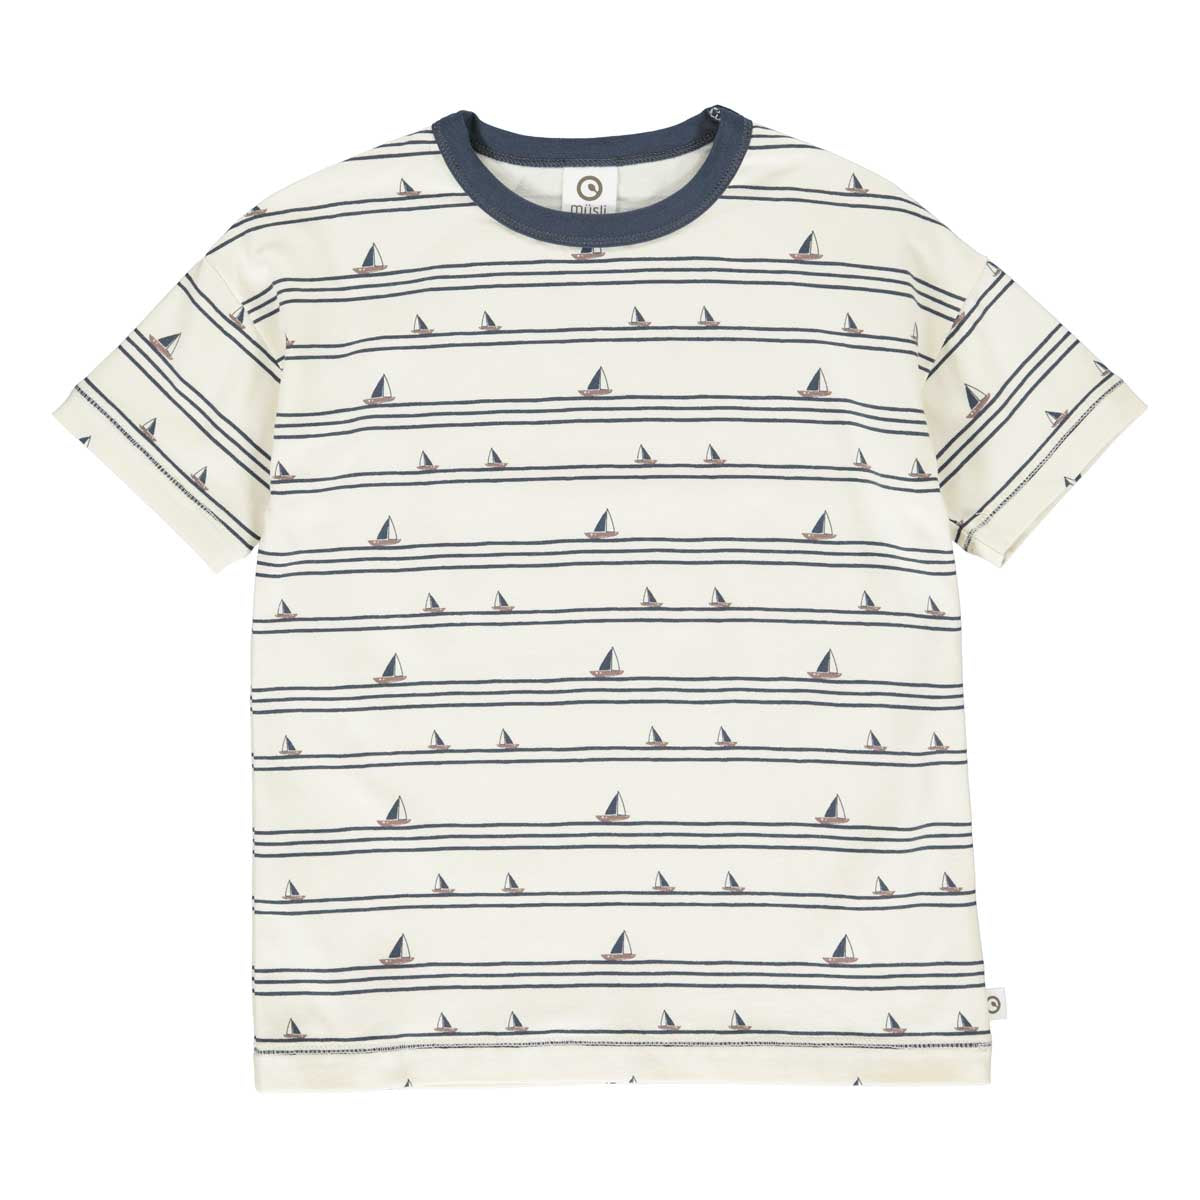 Musli Boat print short sleeve t-shirt